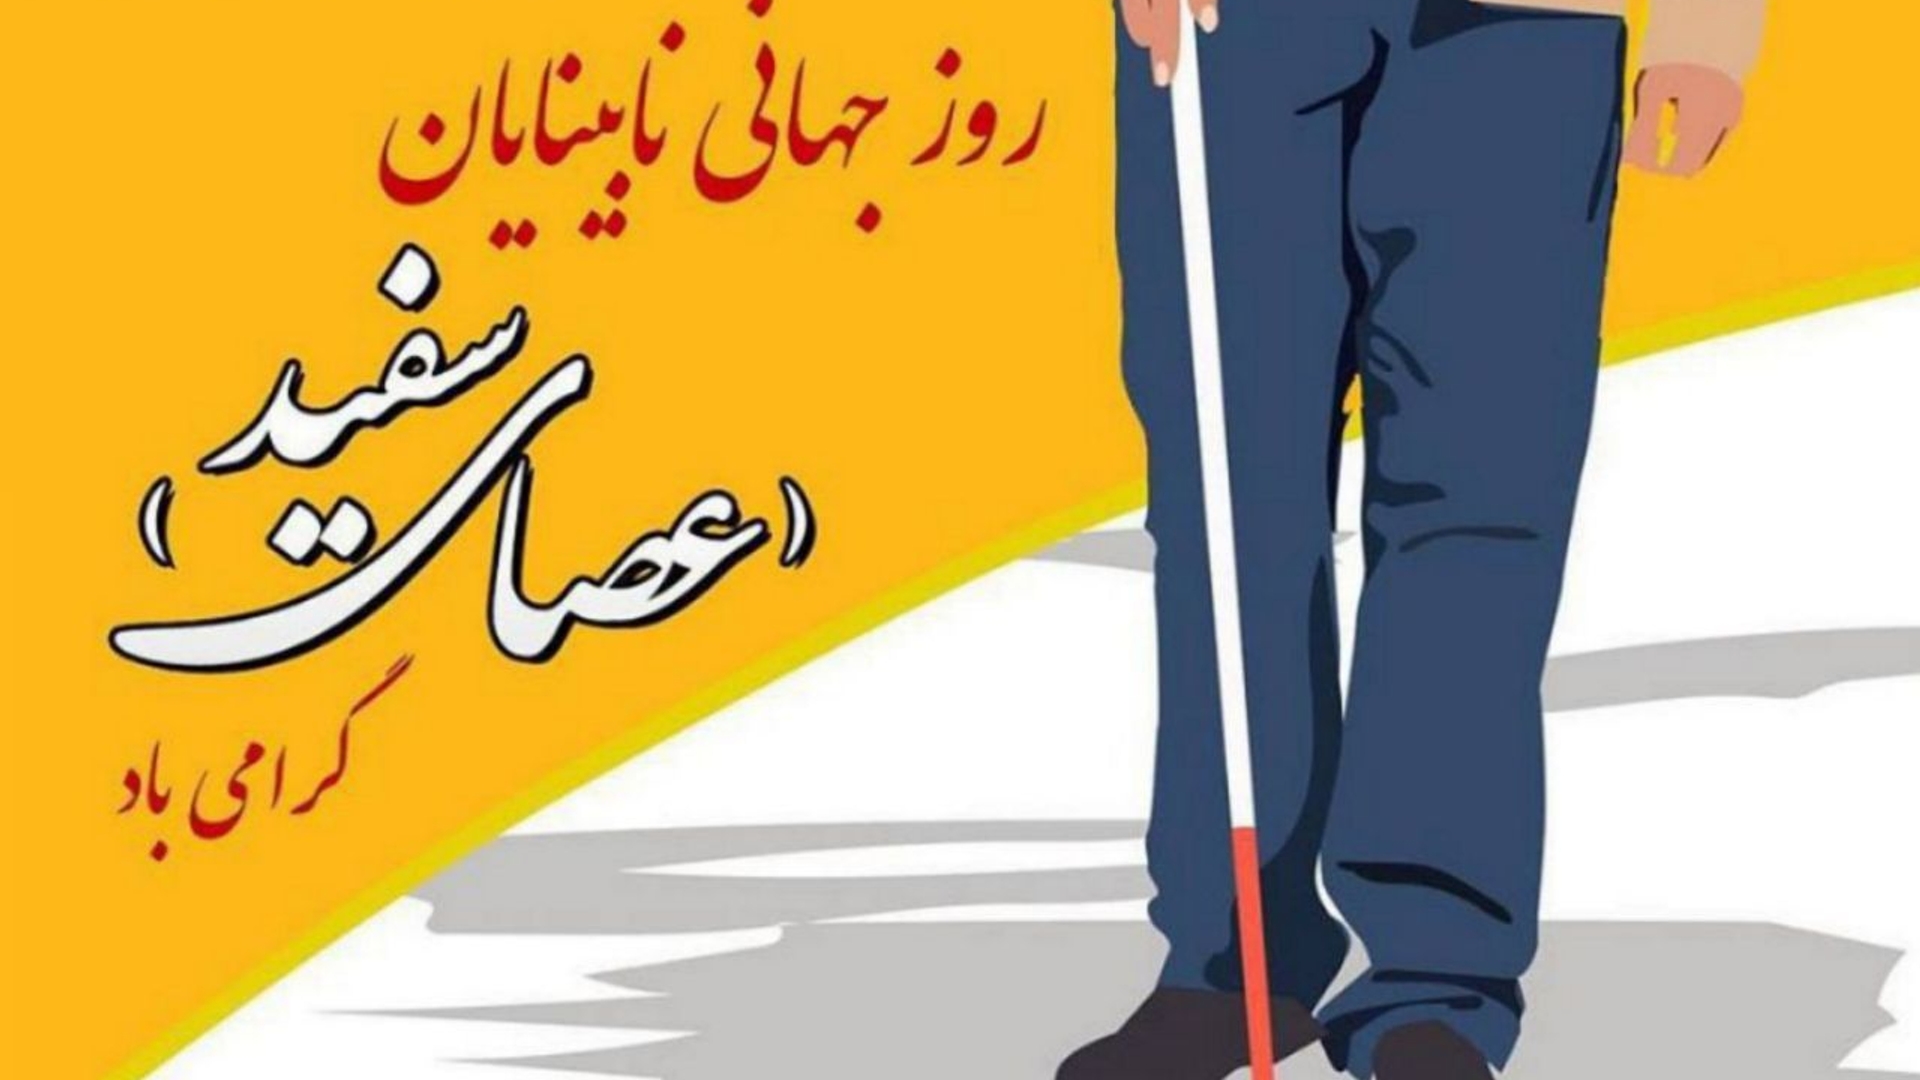 | ۲۳ مهرماه |
روز جهانی نابینایان گرامی‌باد

"روابط عمومی فرمانداری شهرستان فراهان"